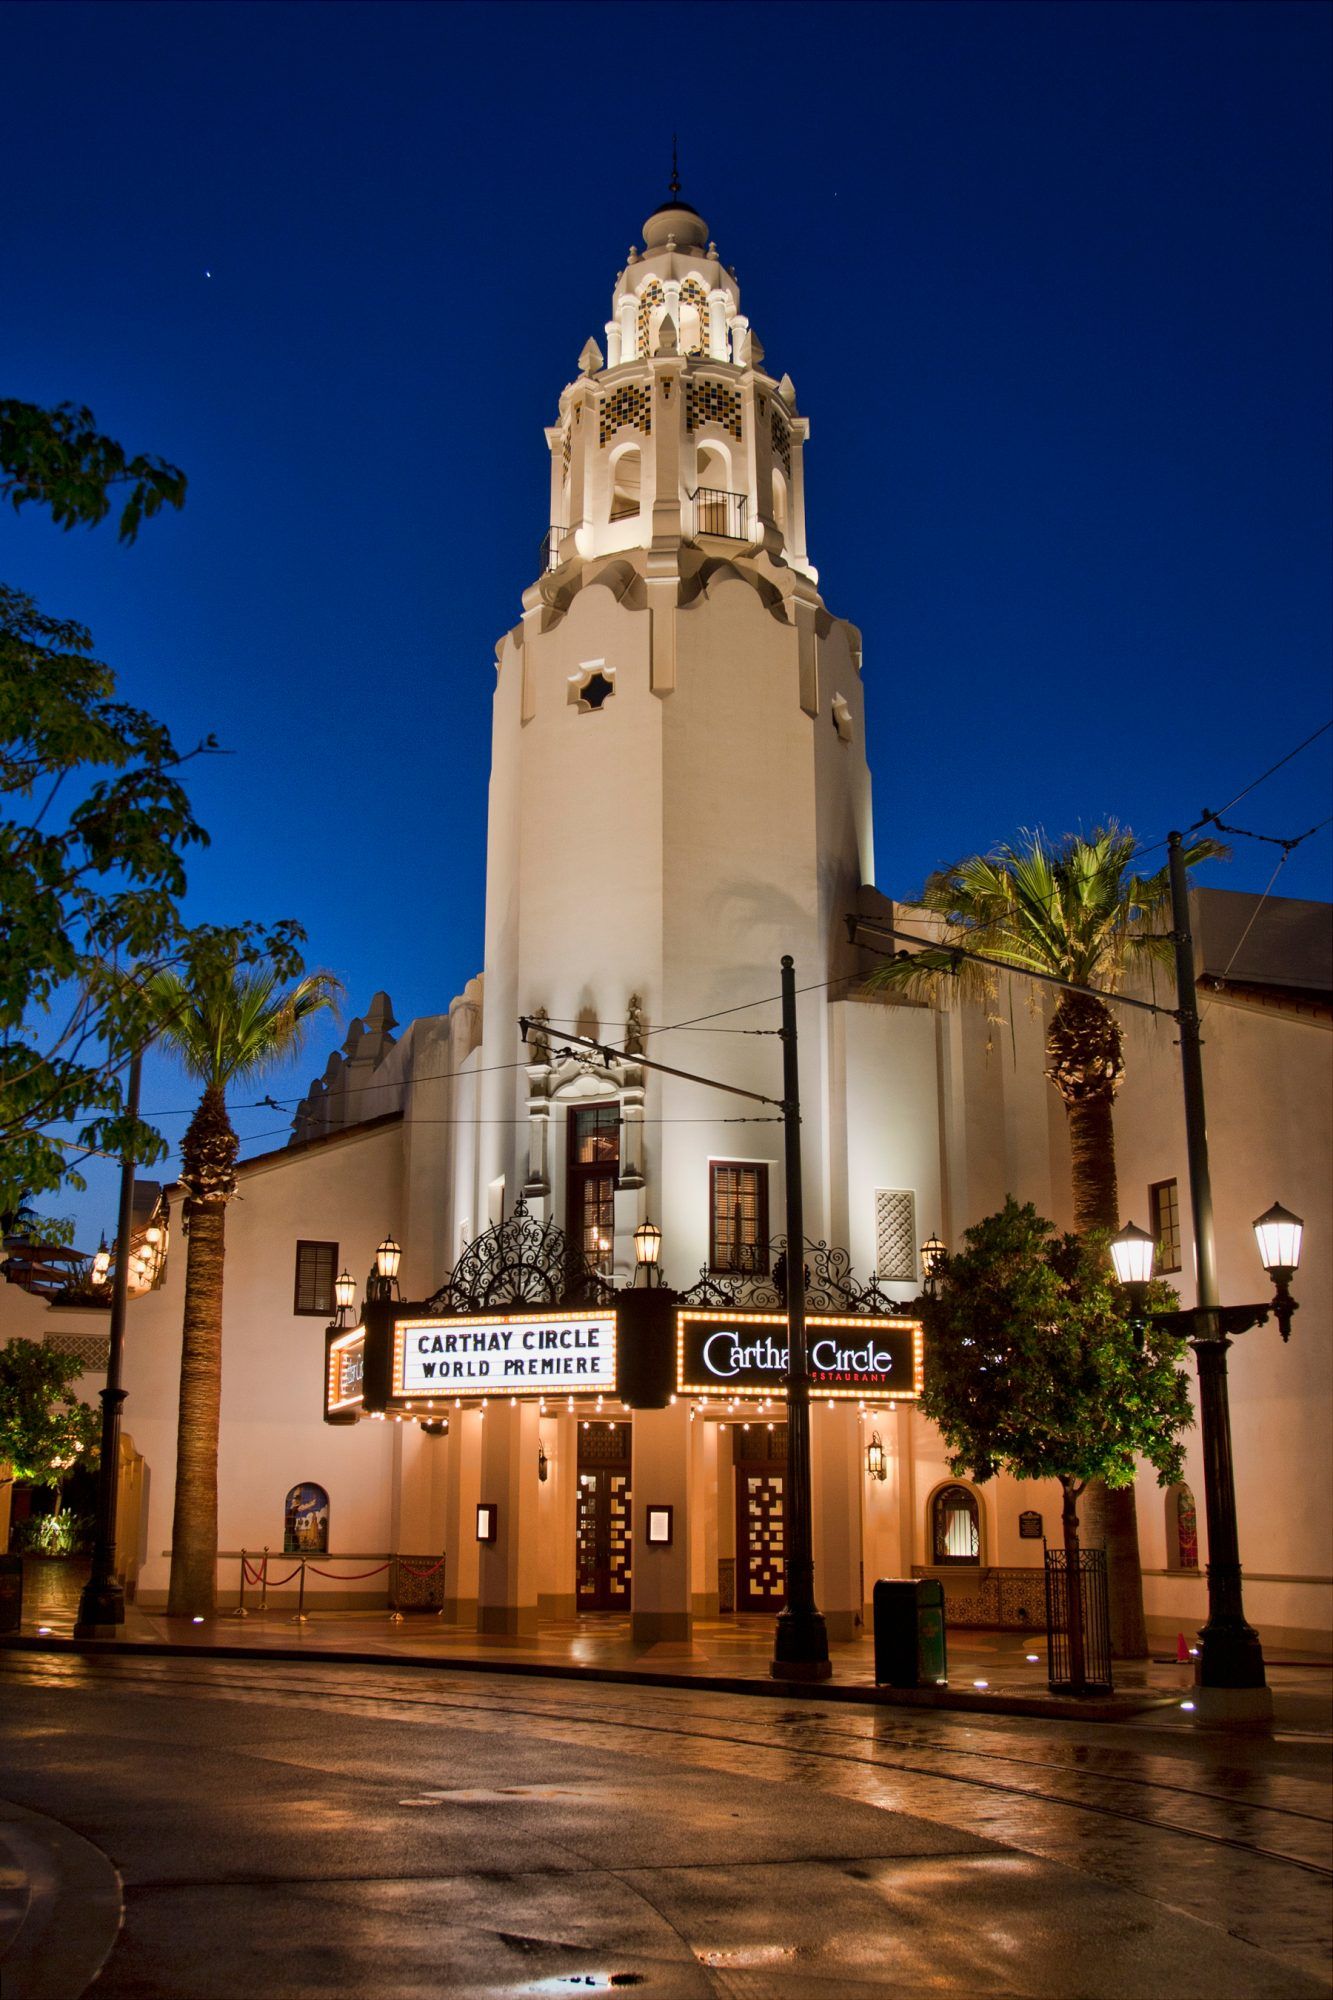 תיאטרון מעגל קרתאי הוא ציון מרהיבבאתר הרפתקאות דיסני קליפורניה